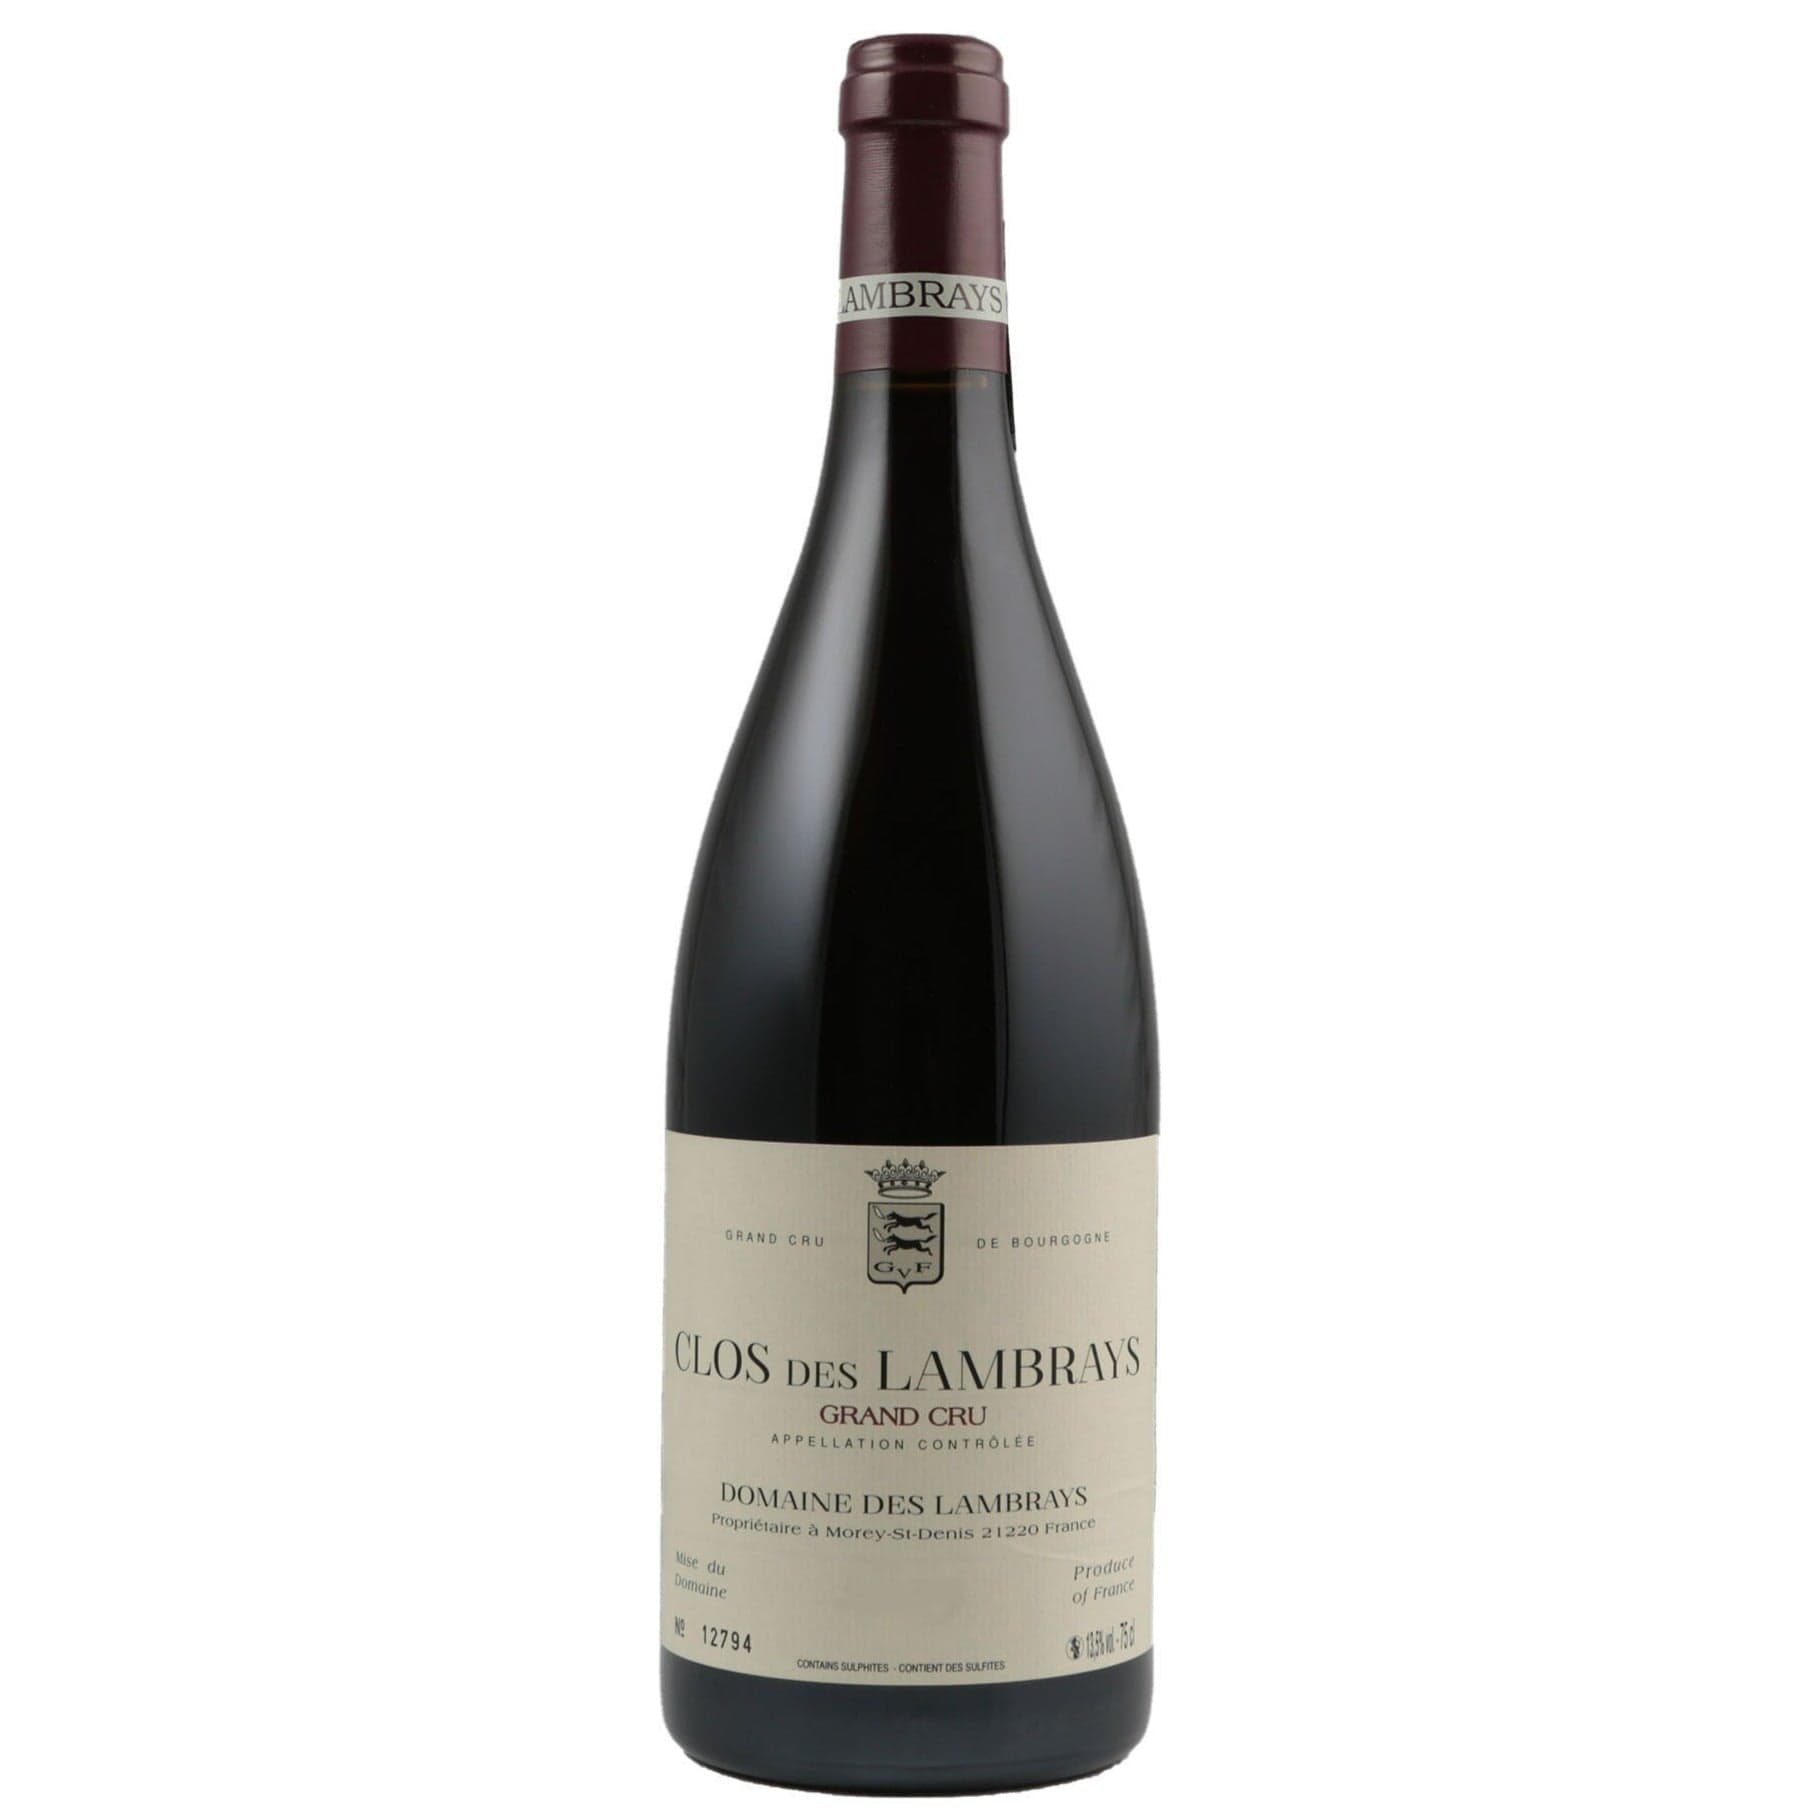 Single bottle of Red wine Domaine des Lambrays, Clos des Lambrays Grand Cru, Morey-Saint-Denis, 2016 100% Pinot Noir